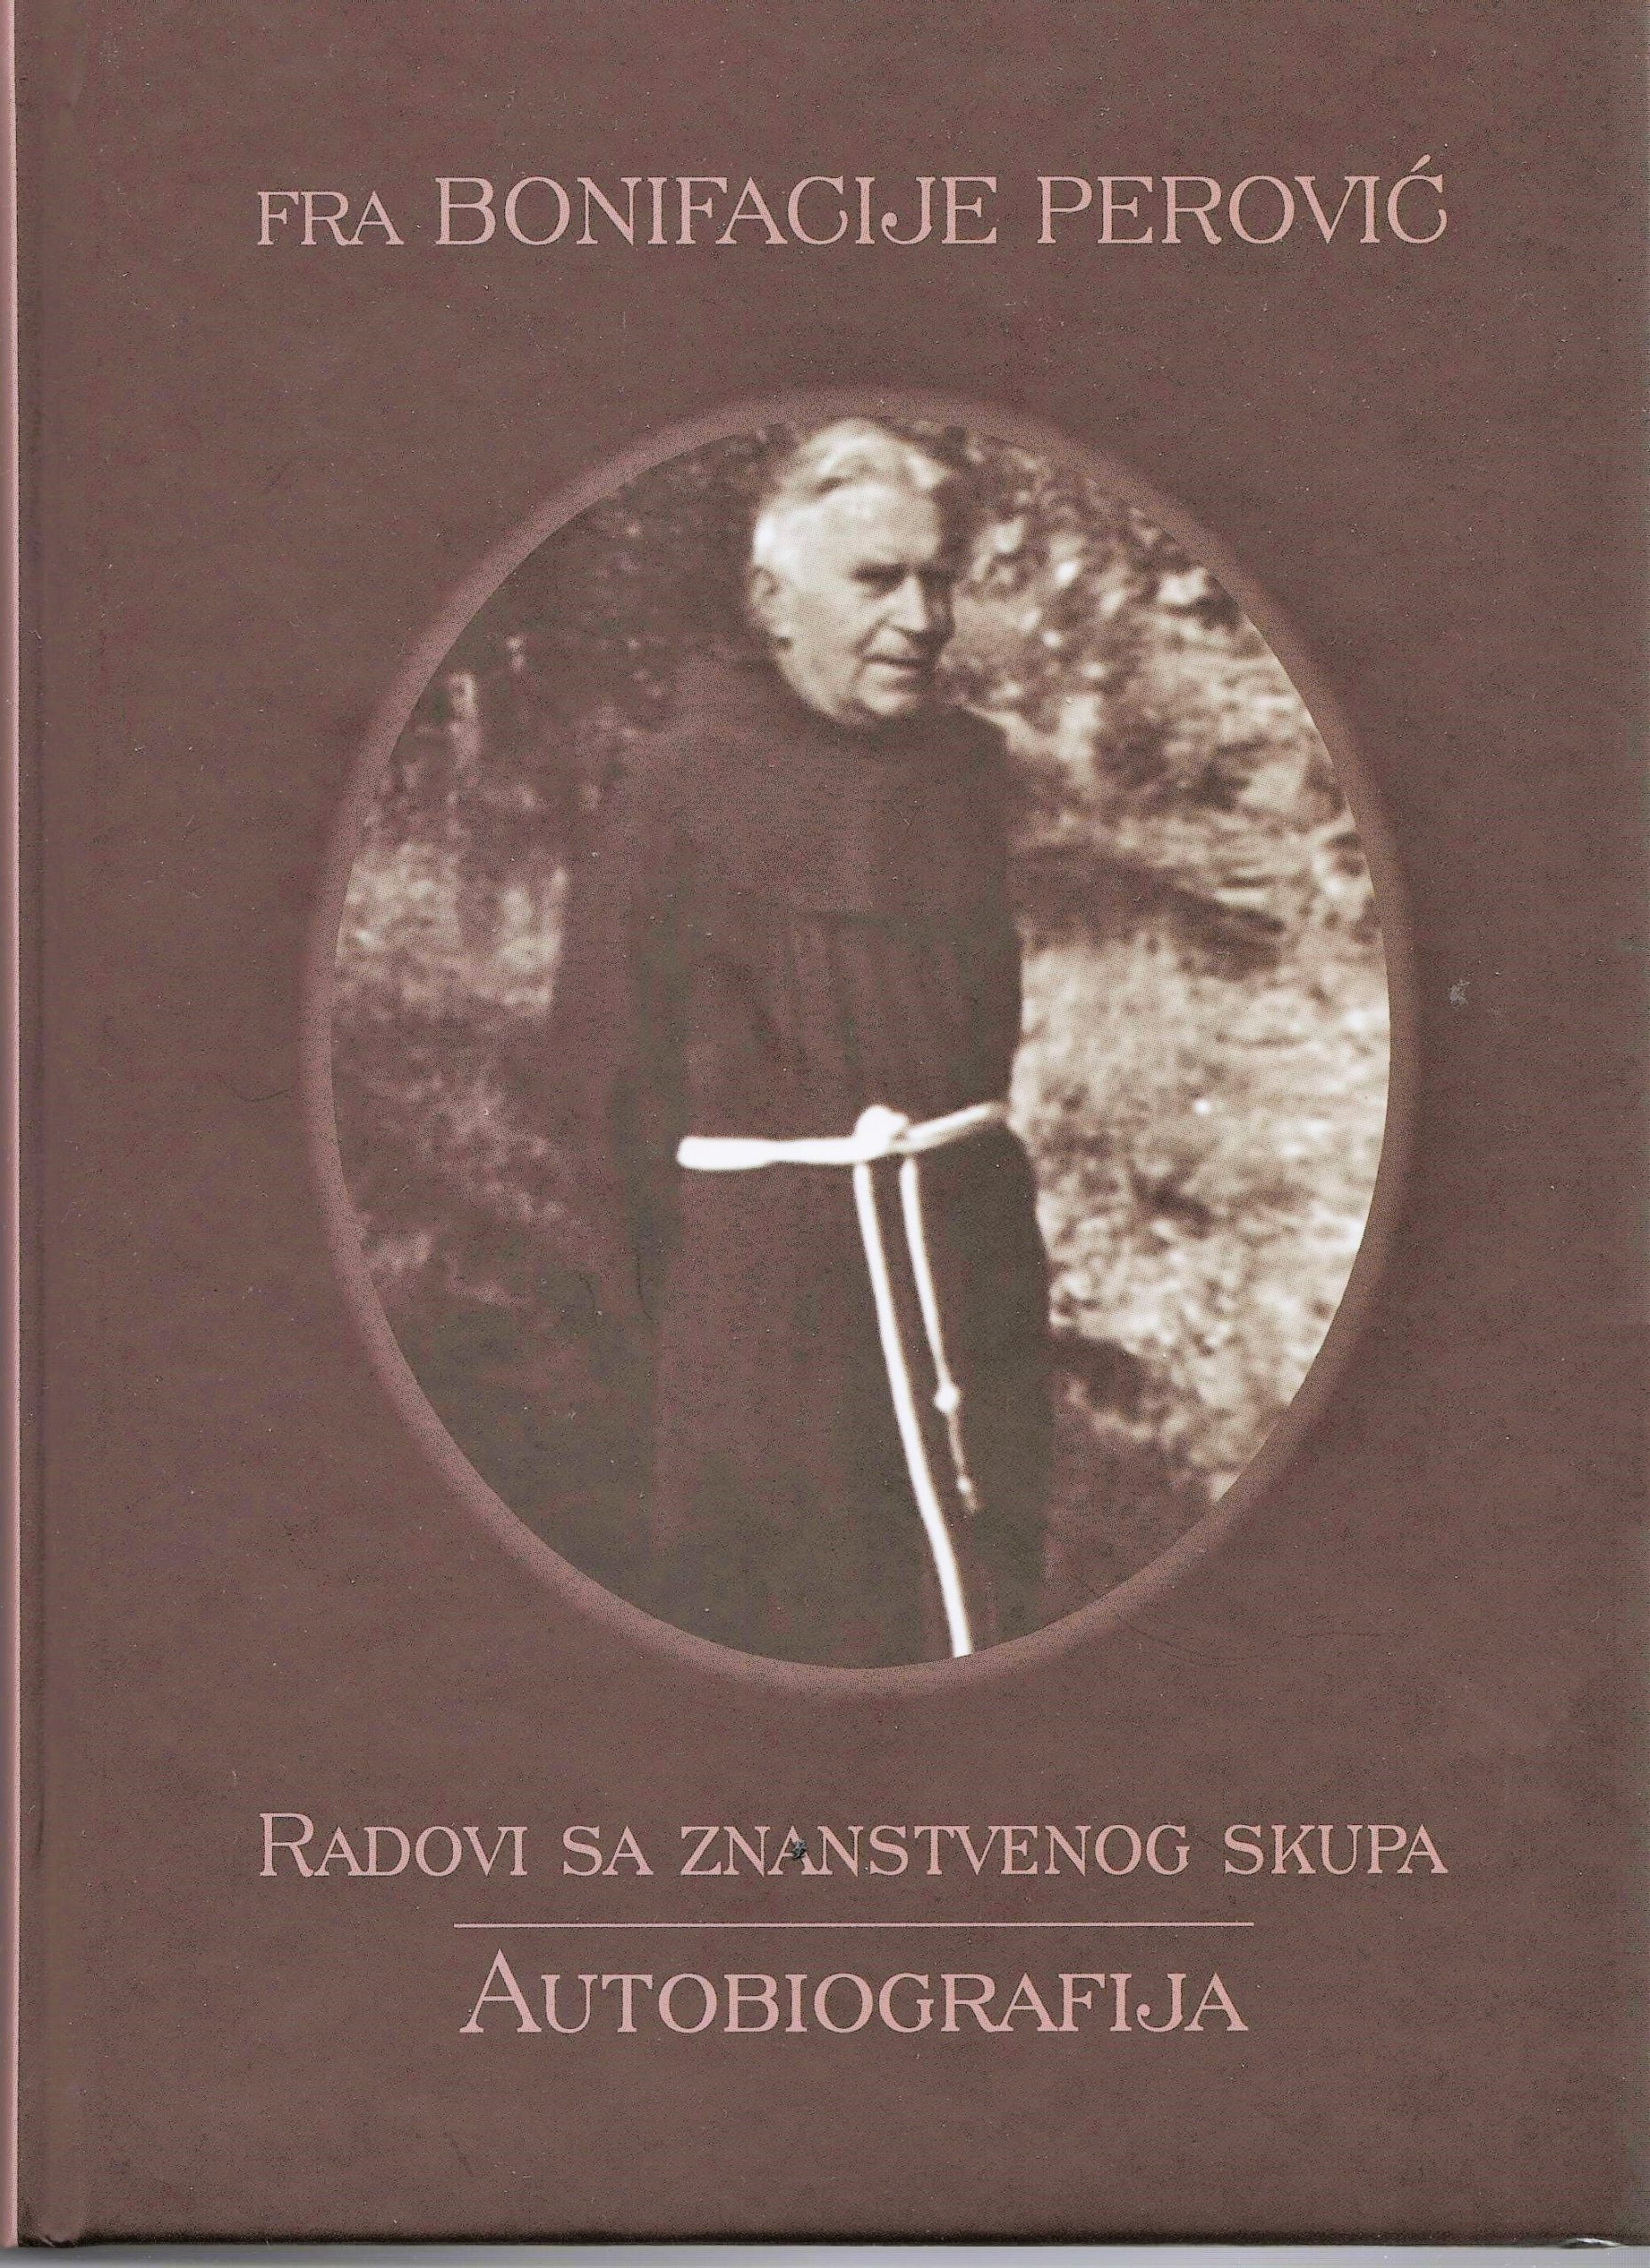 Predstavljene knjige o fra Bonifaciju Peroviću